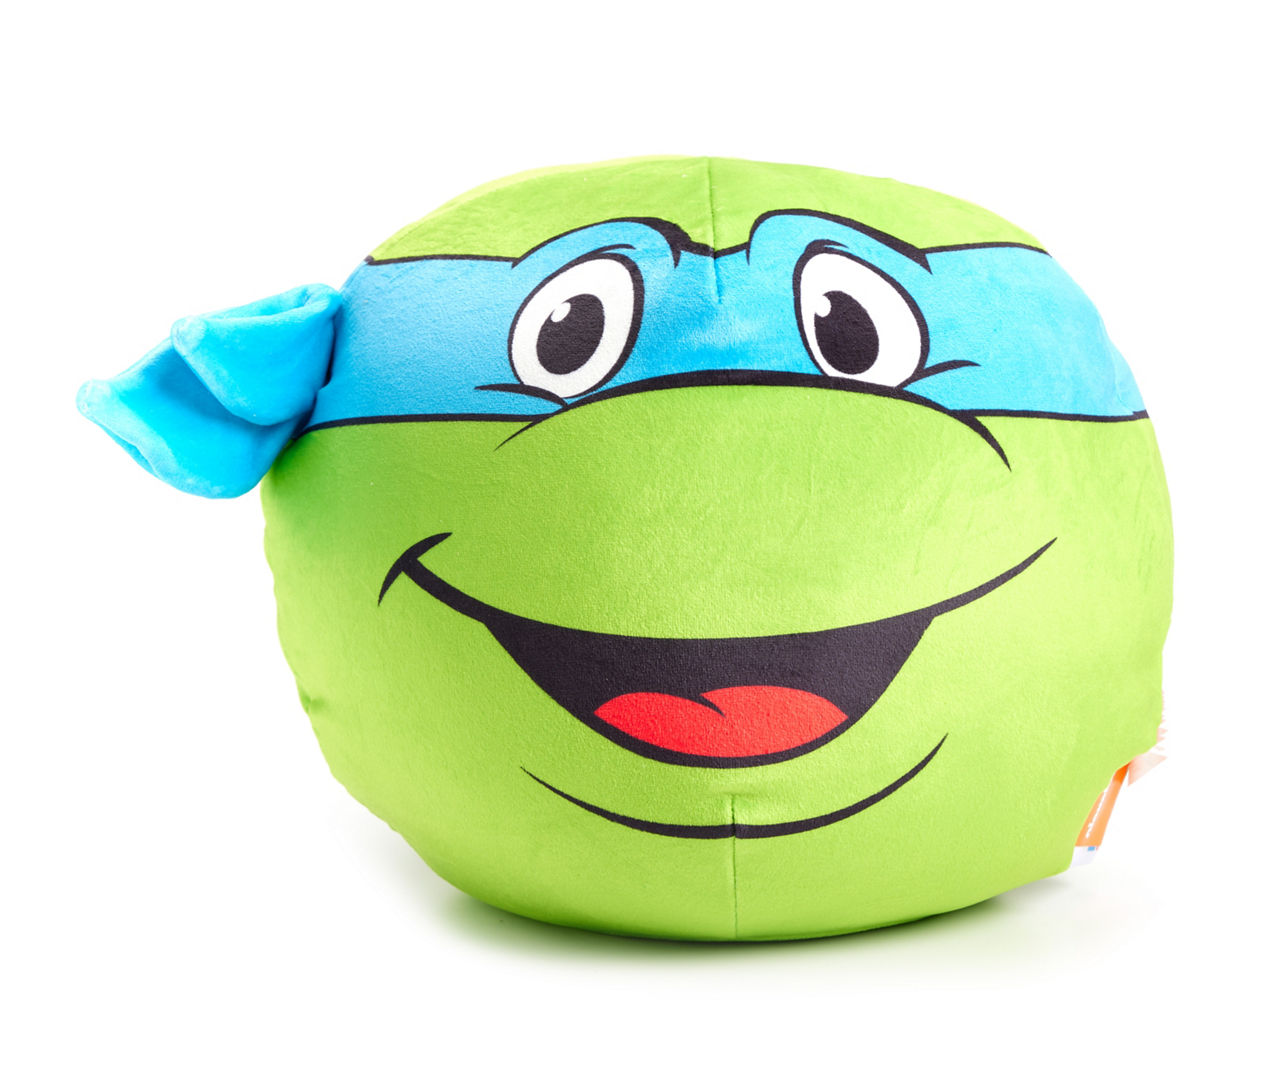 Nickelodeon Teenage Mutant Ninja Turtle Plush Leo Leonardo TMNT Stuffed Toy